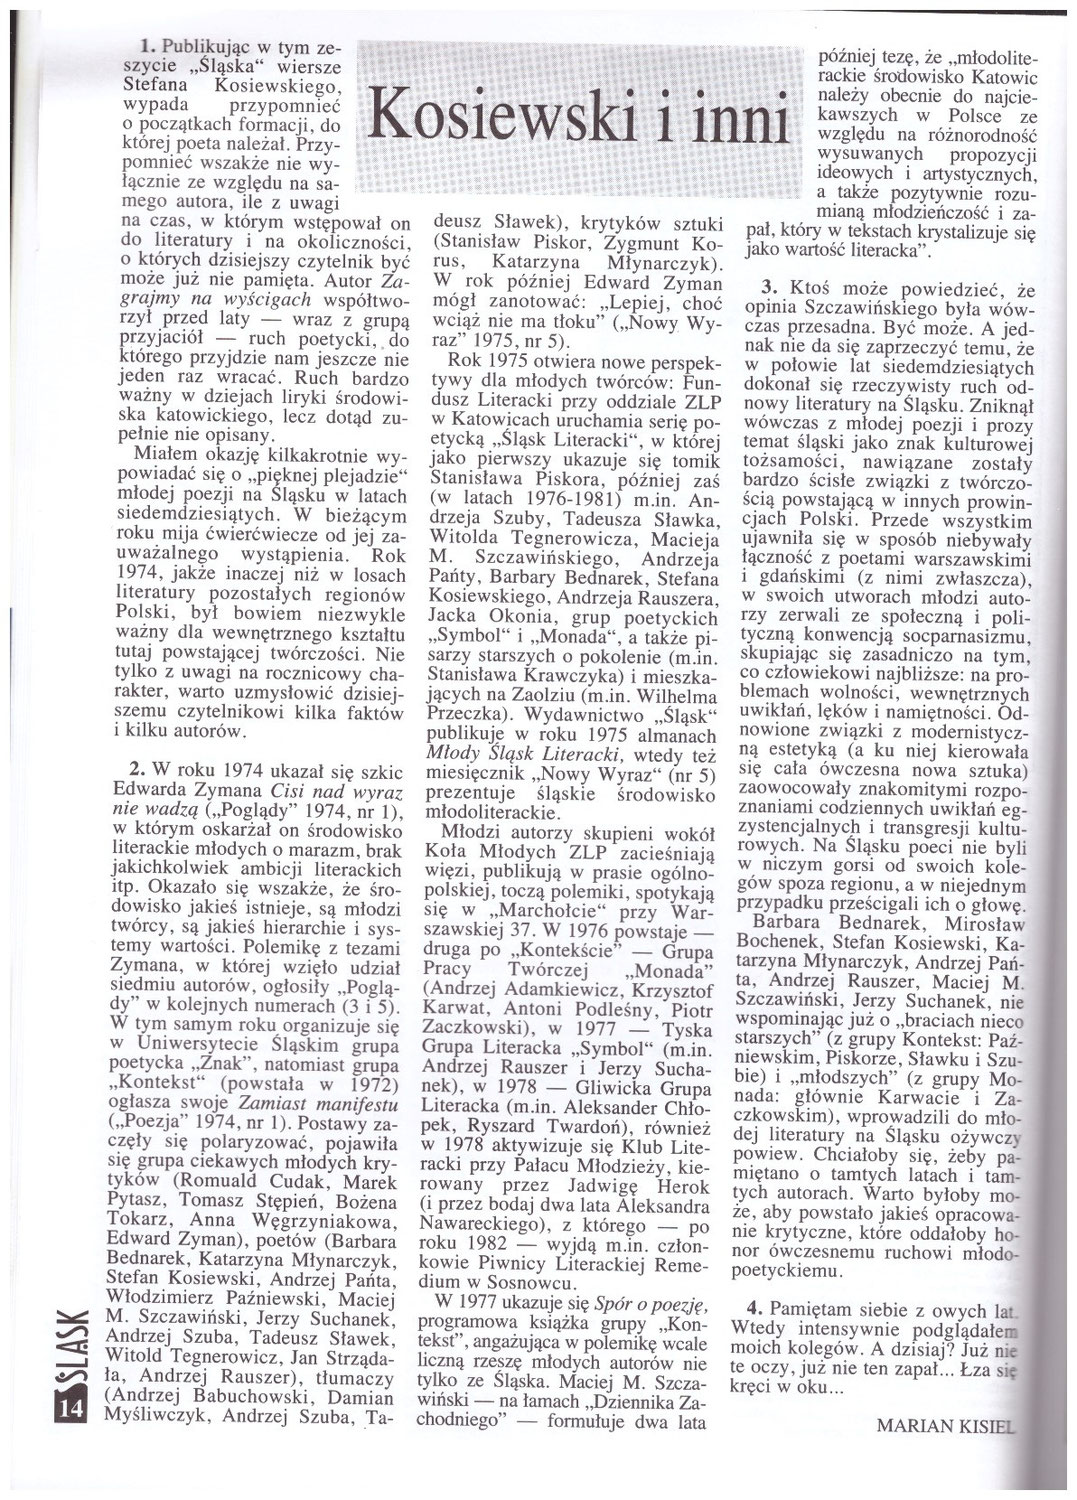 Kosiewski i inni, Marian Kisiel. Miesięcznik Społeczno-Kulturalny Sląsk Katowice Nr 3 marzec 1999, 14-15